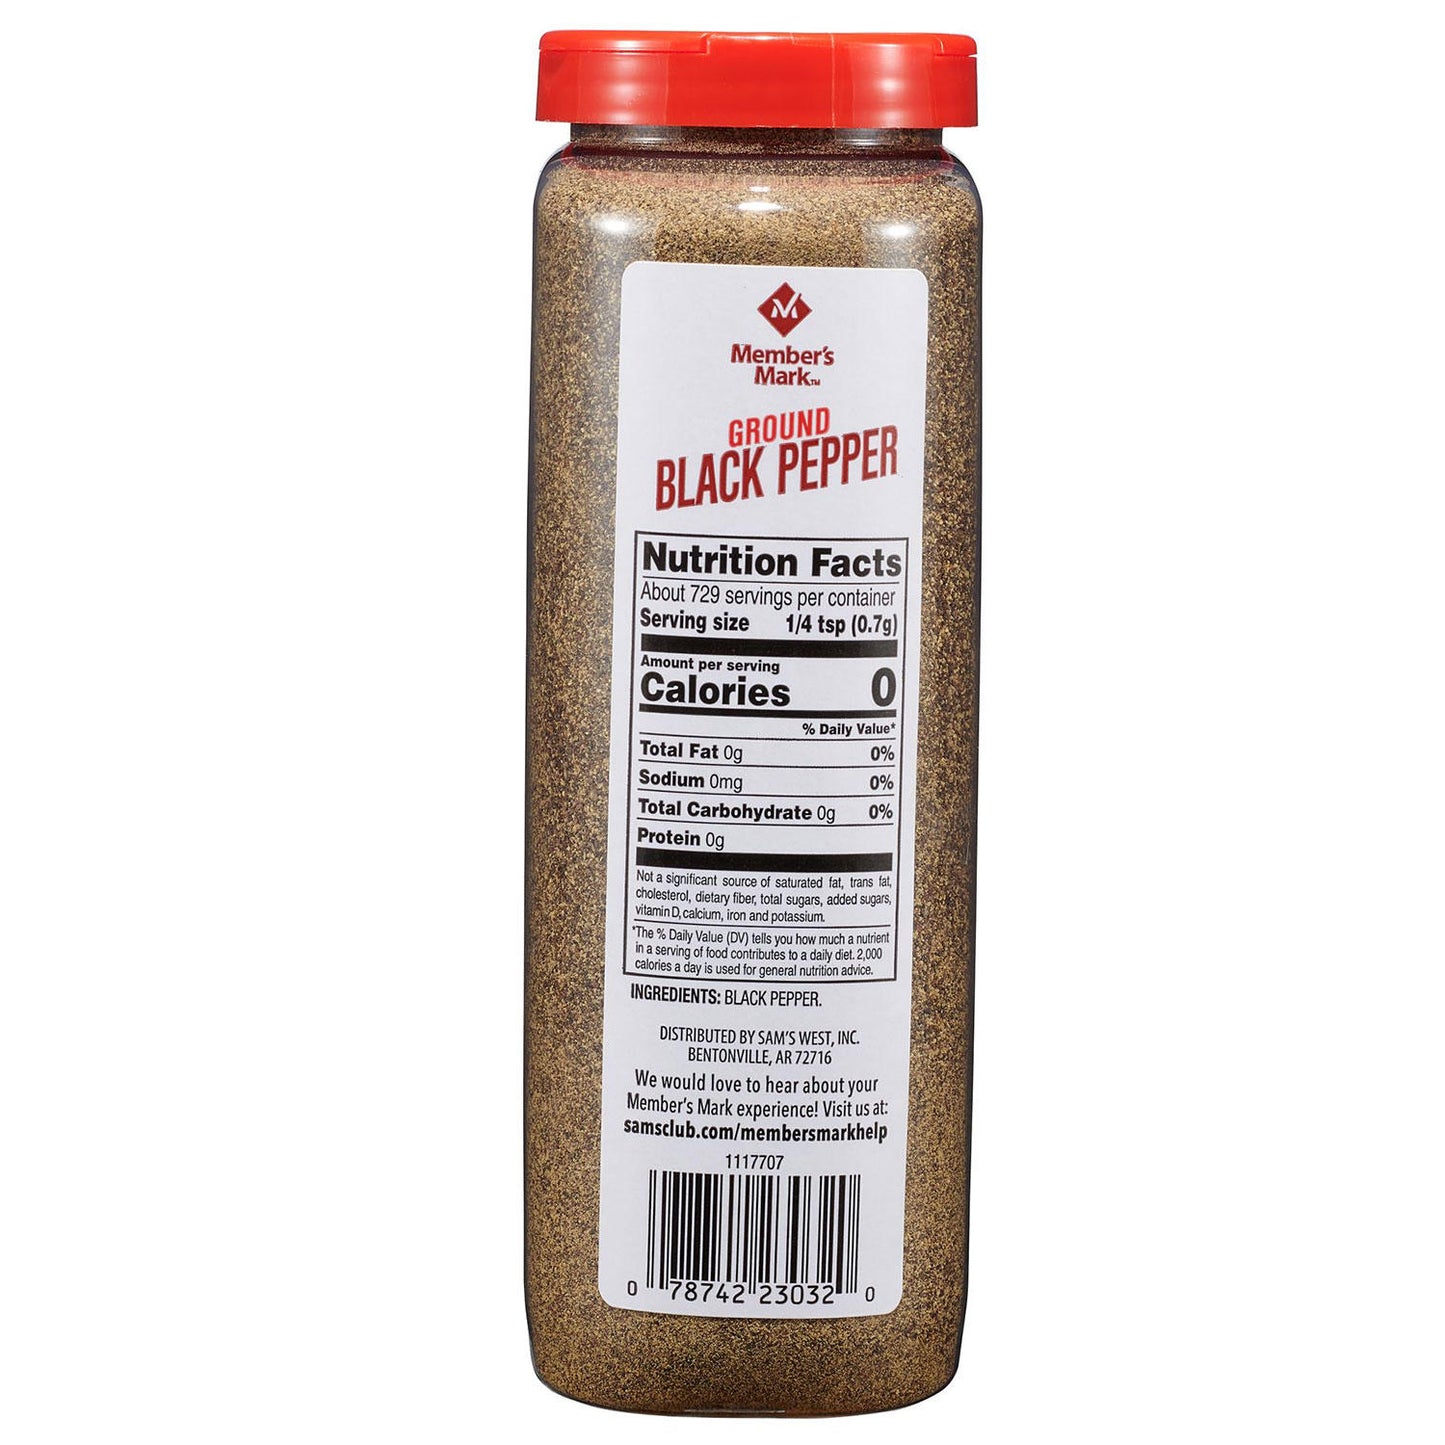 Member's Mark Ground Black Pepper (18 oz.)